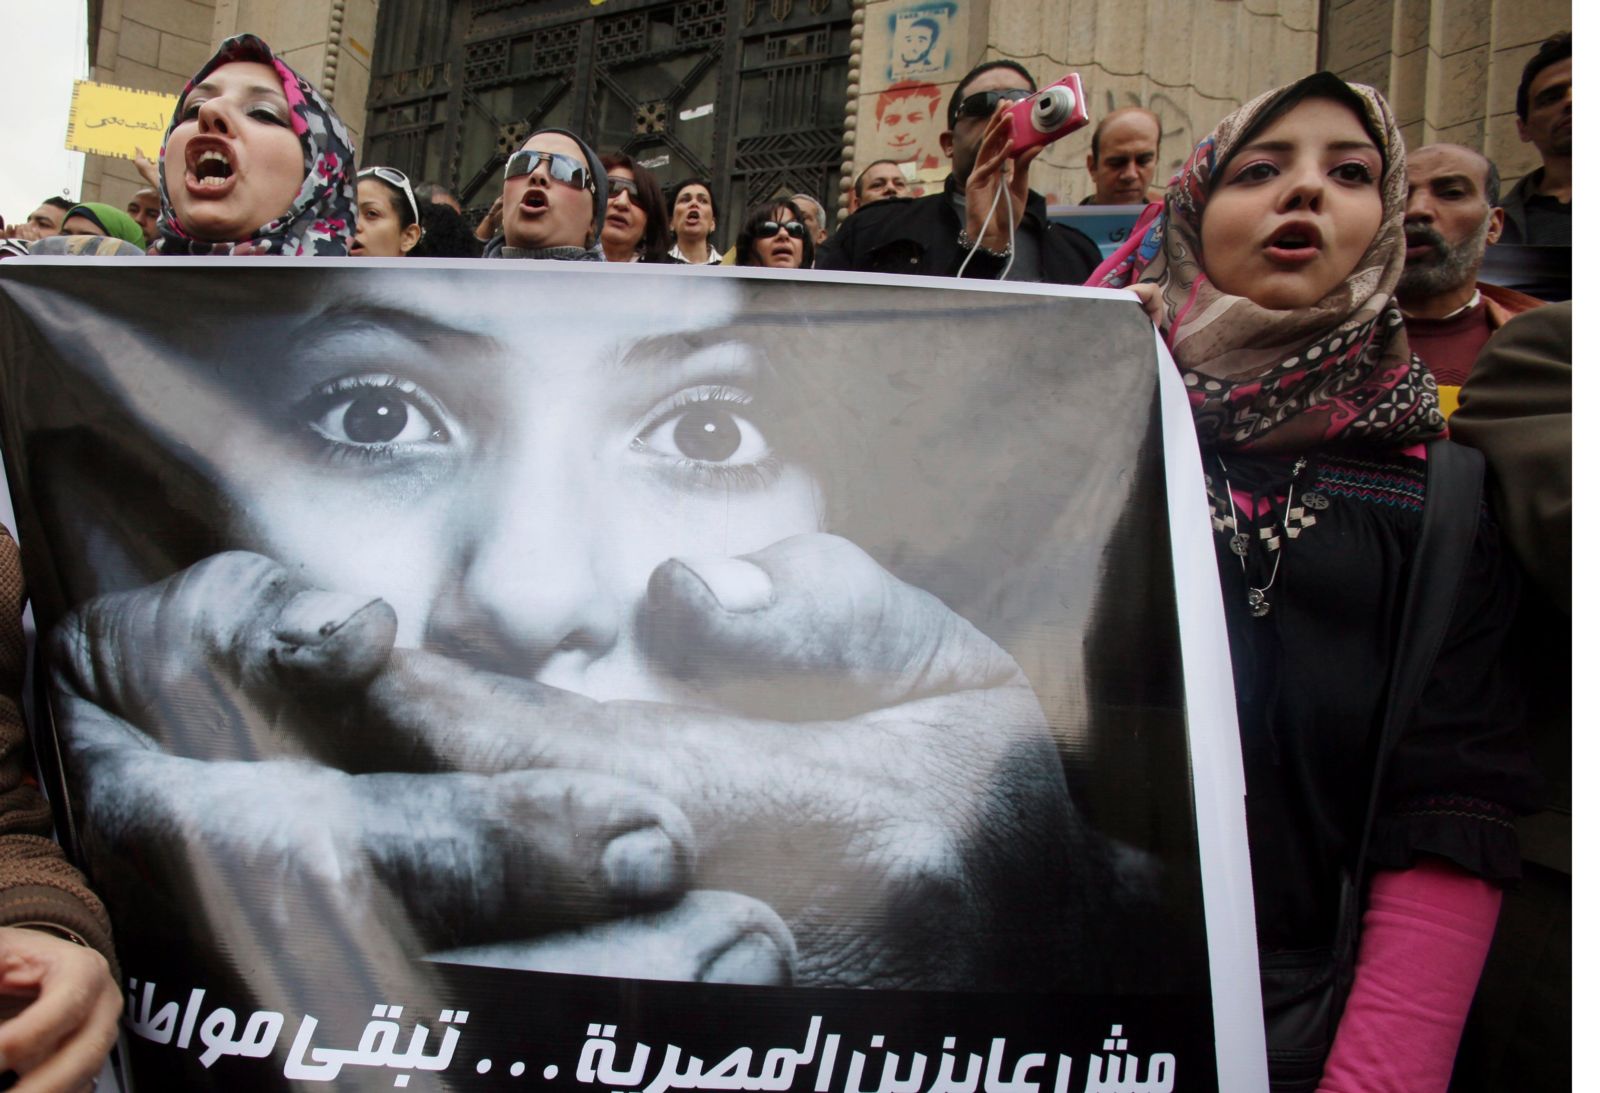 Resistir o huir: las ONG responden a la represión en Egipto